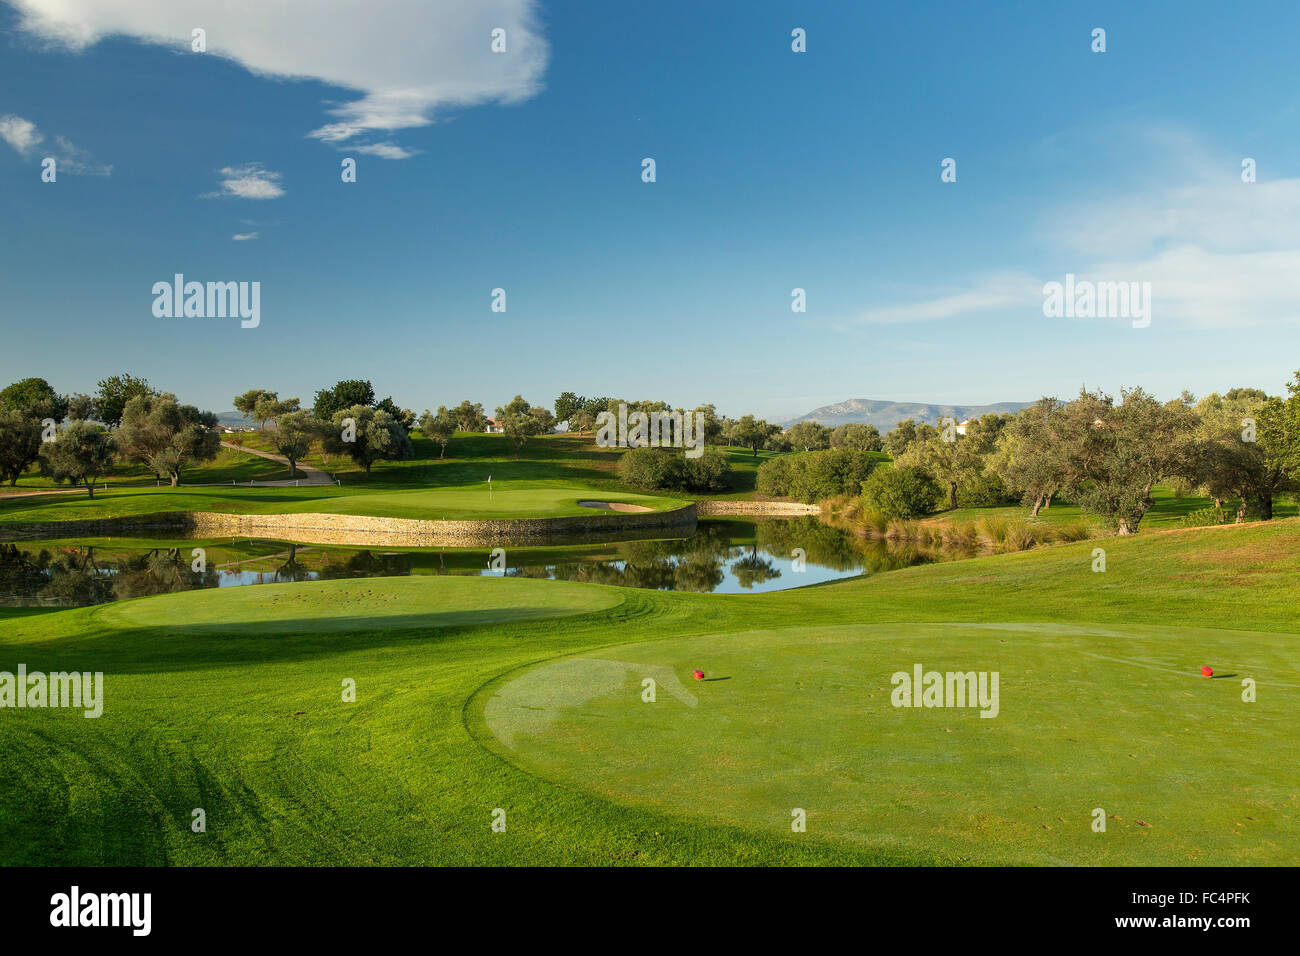 Panoramica Golf Club, spanischer Golfplatz in der Nähe von Valencia. Stockfoto